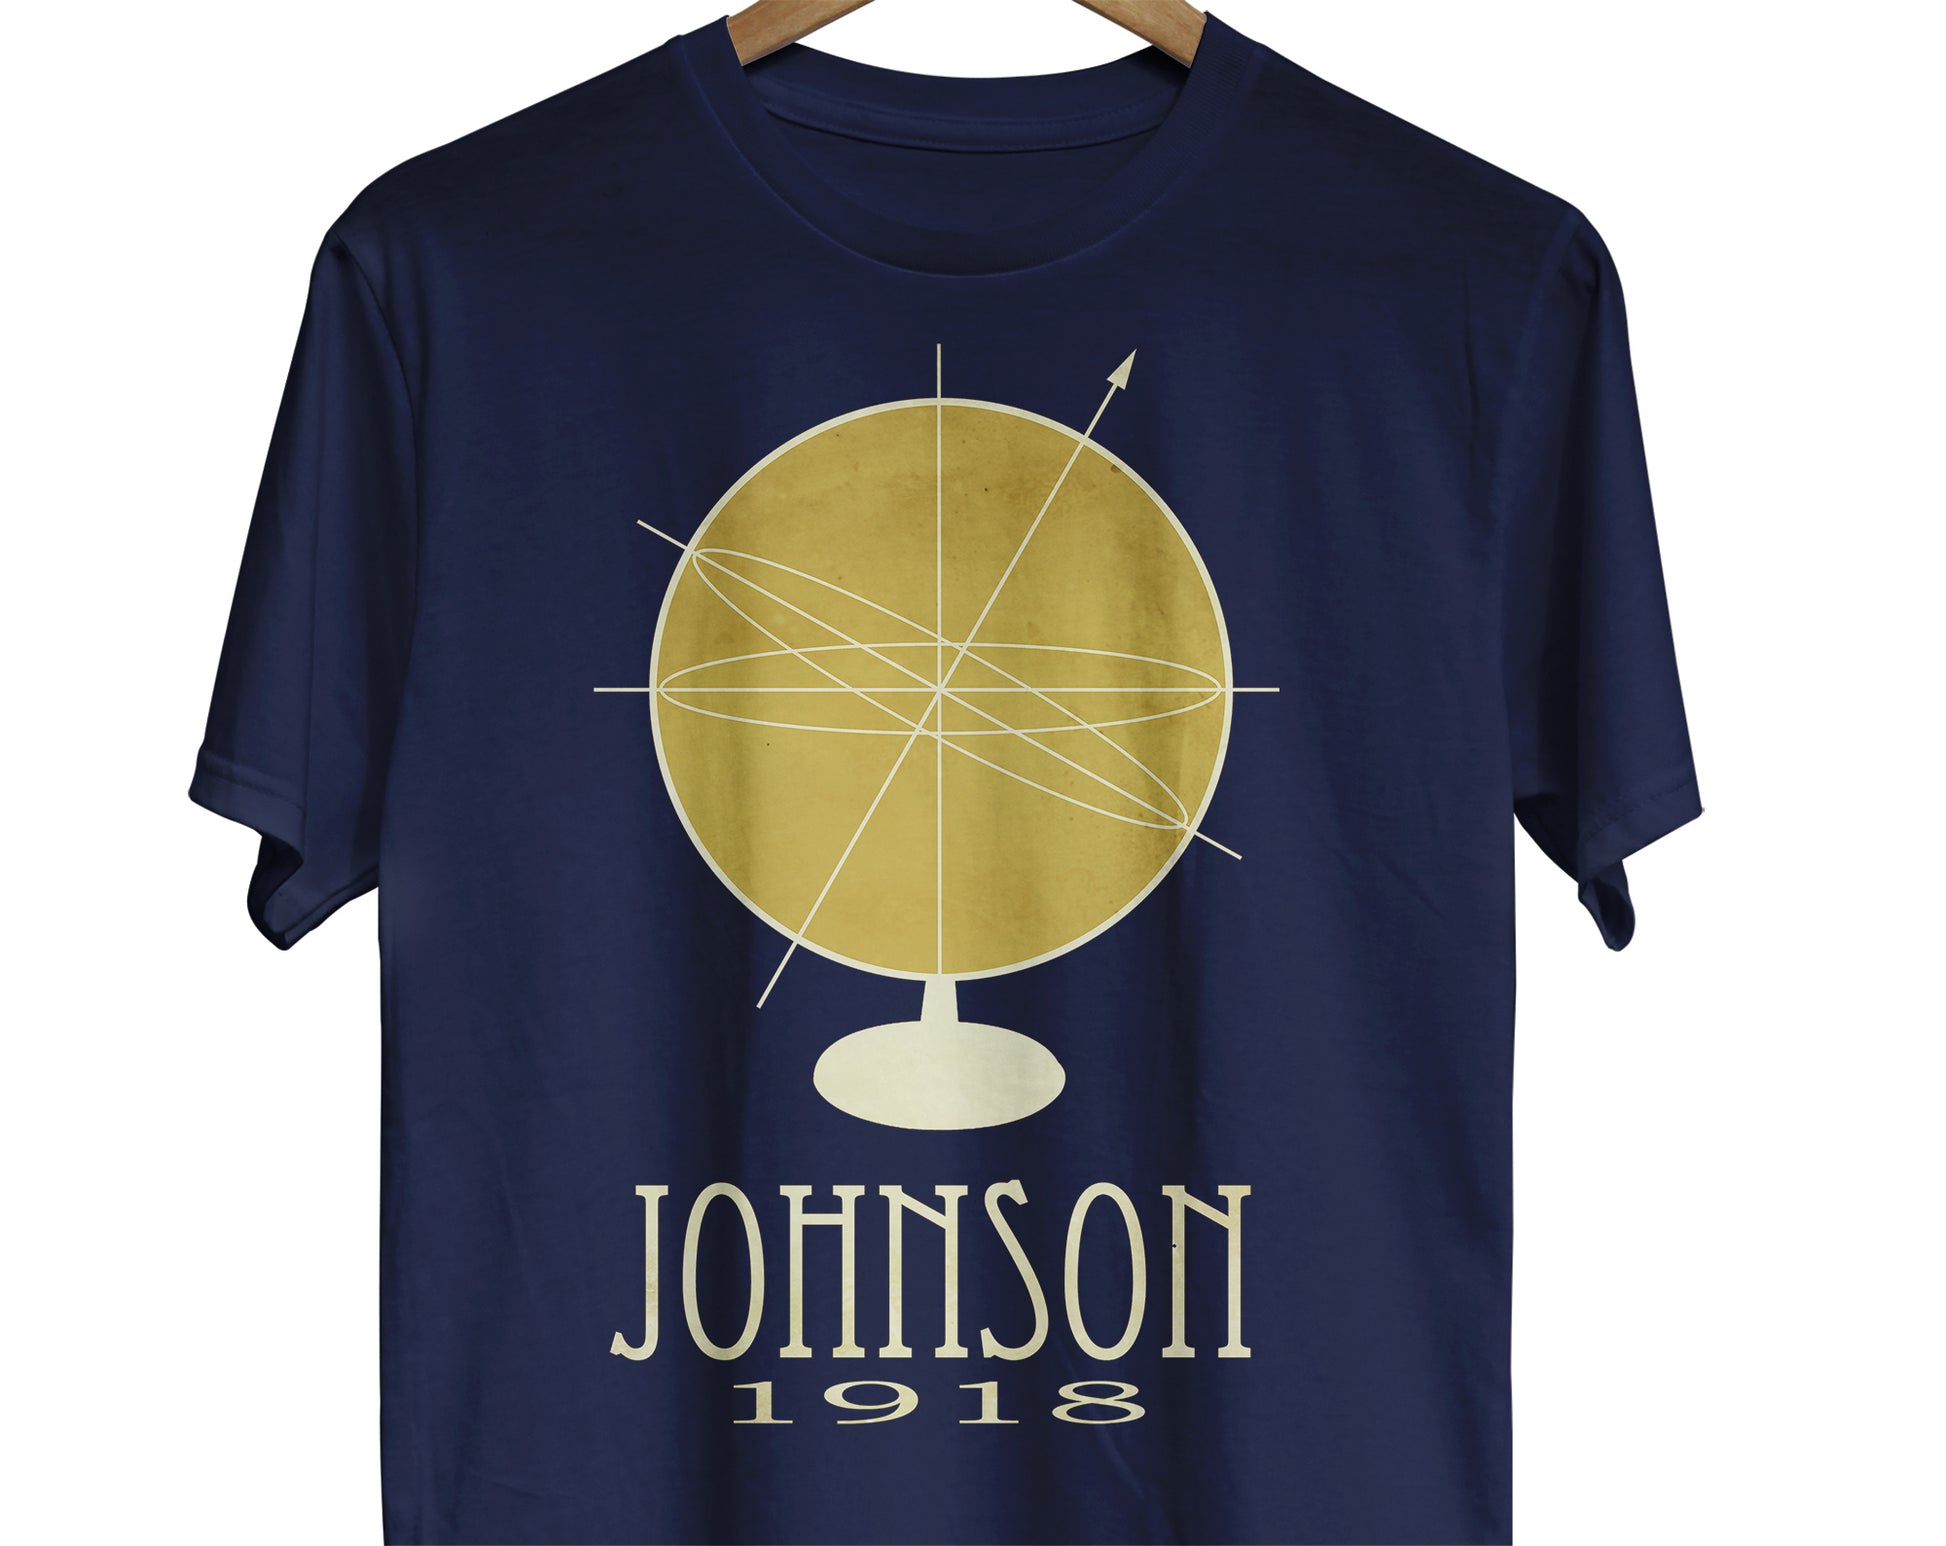 Katherine Johnson NASA mathematician t-shirt for math teacher